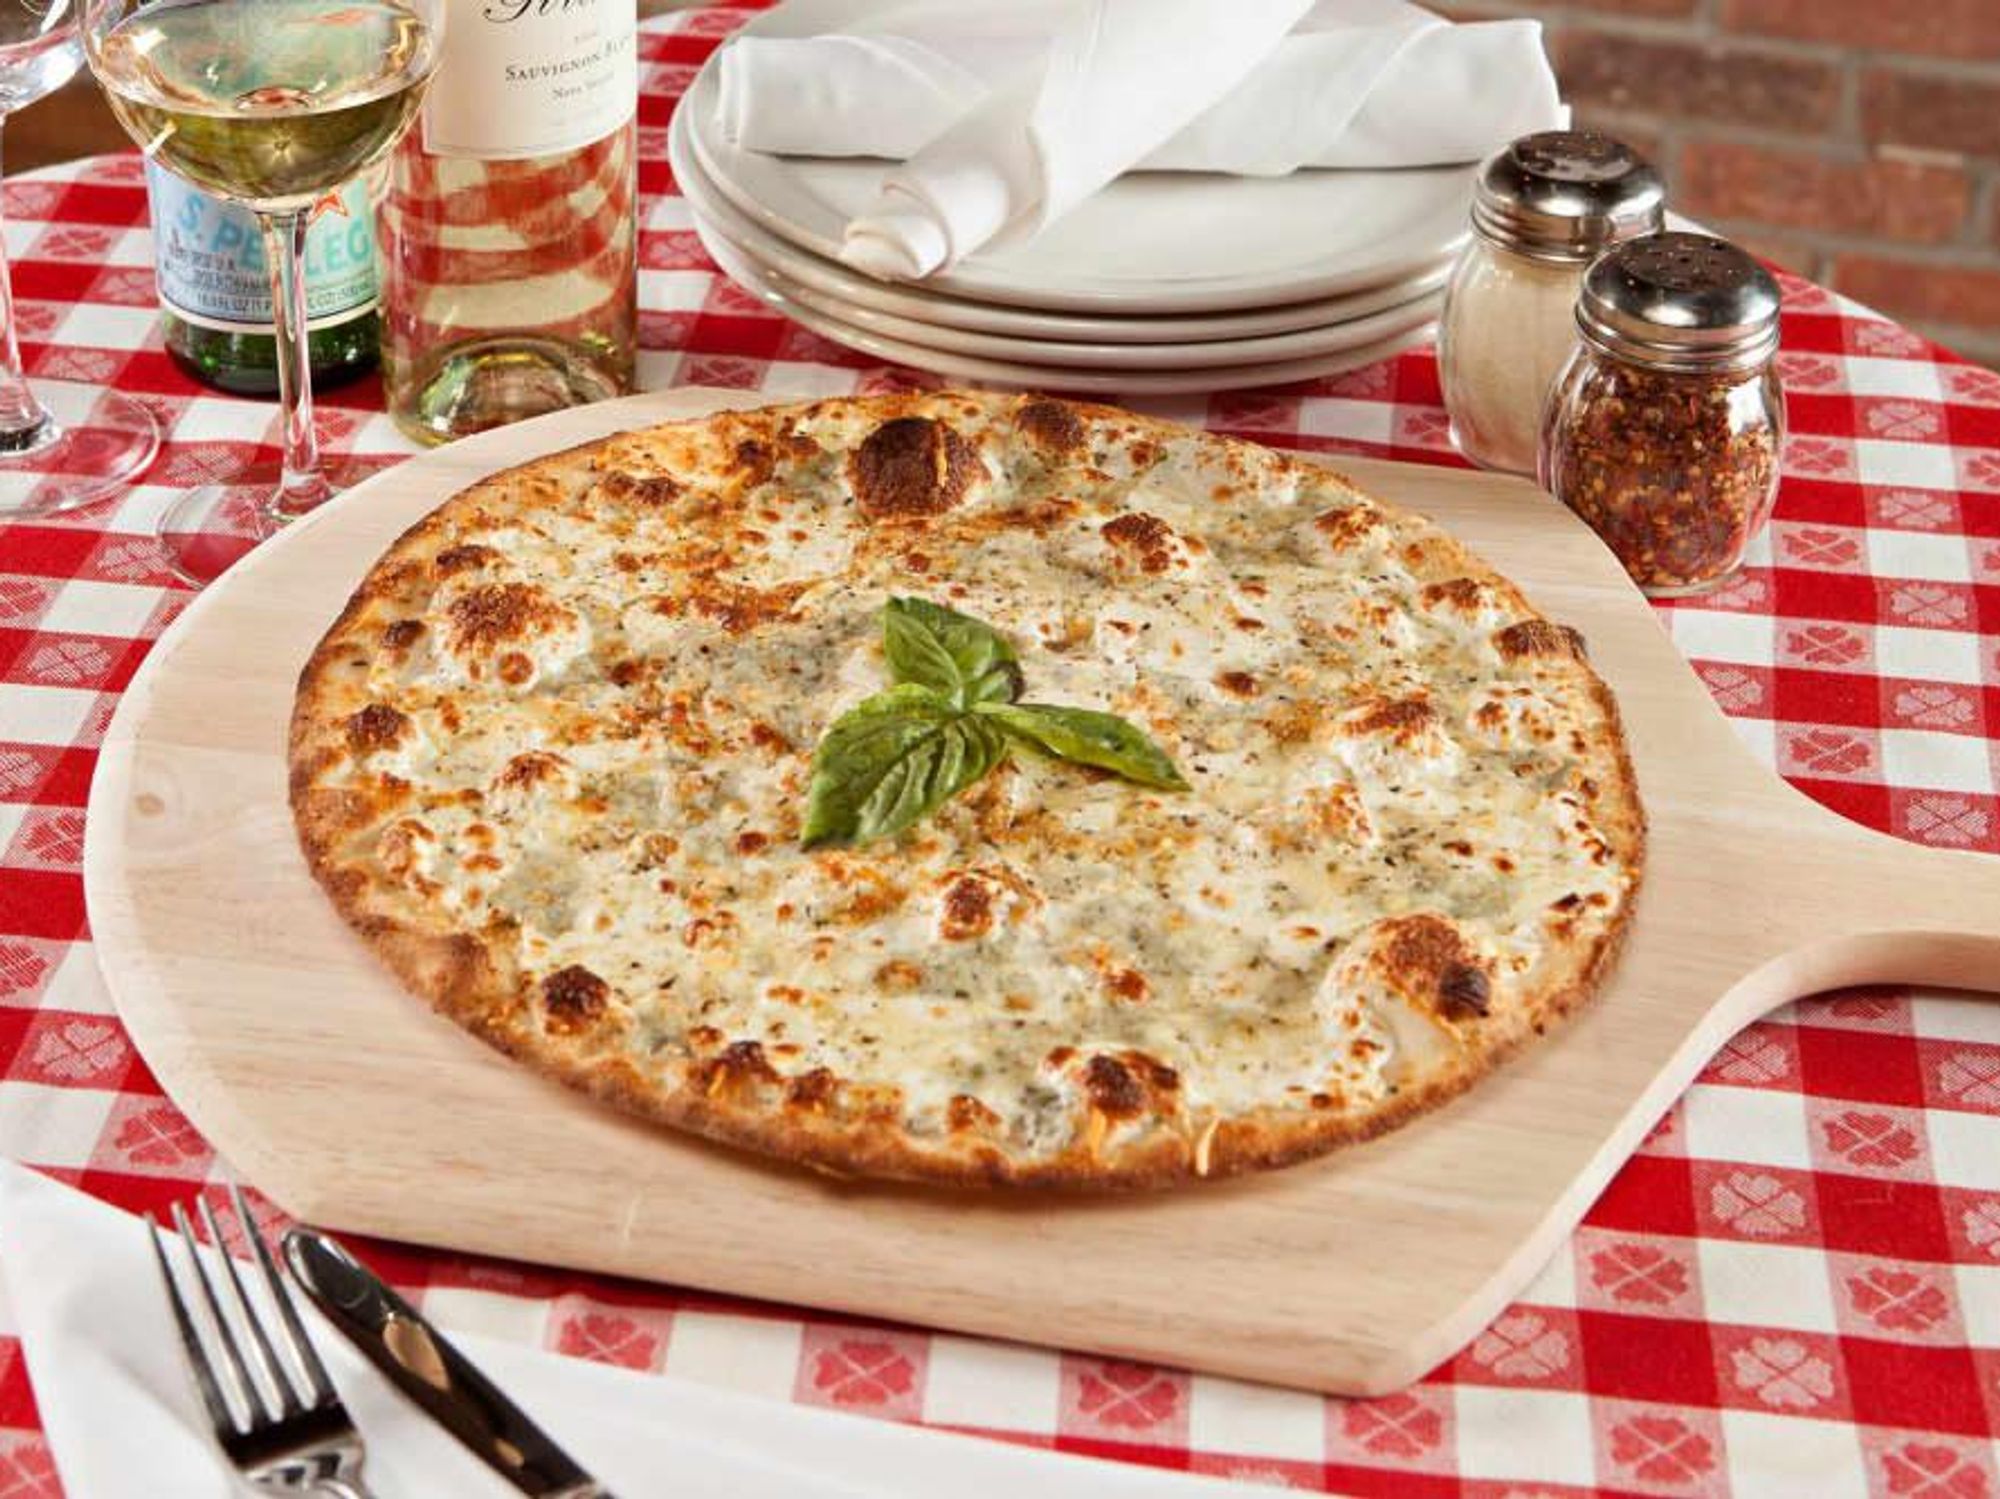 Grimaldi's pizza